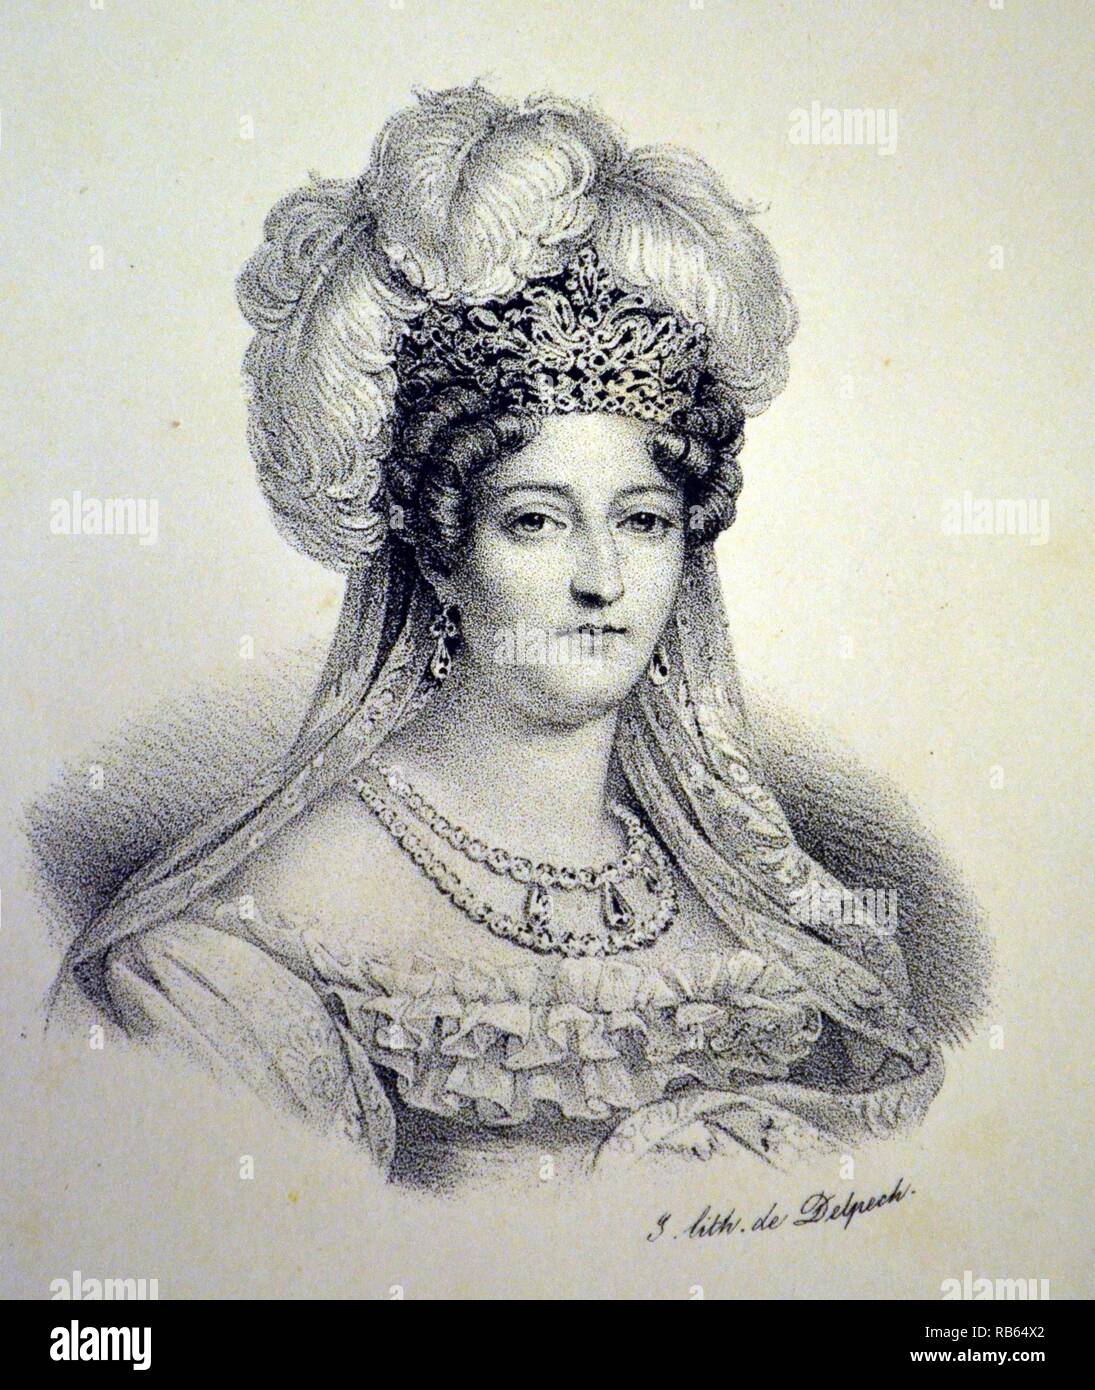 Marie Thérèse Charlotte, duchesse d'Angouleme (1778-1851) edest enfant de Louis XVI de France. En tant qu'épouse de l'héritier présomptif elle était connue comme la Dauphine après la Seconde Restauration en 1814 jusqu'à la révolution de 1830. Lithographie, Paris, c1840. Banque D'Images